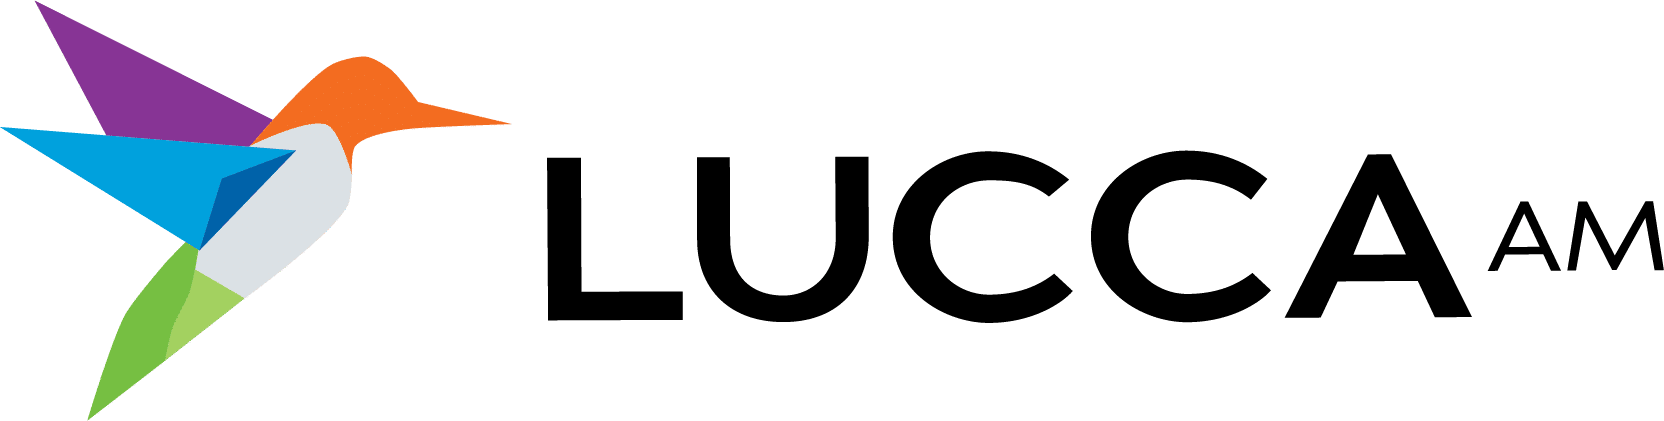 luccaam logo - seo web design in rockford